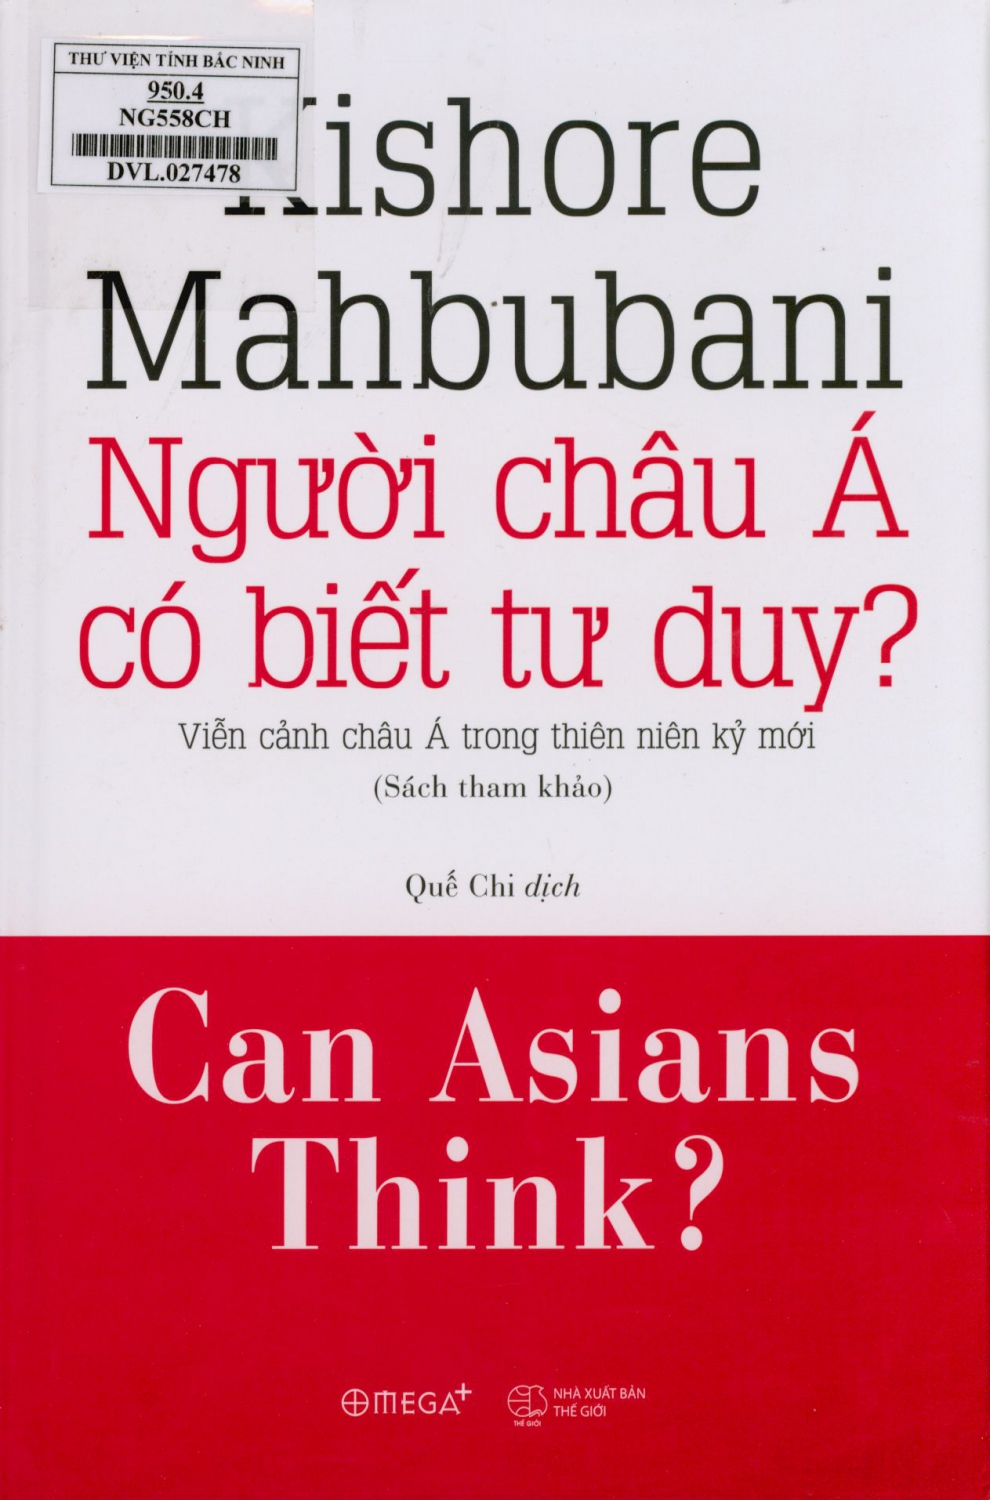 Người châu Á có biết tư duy?